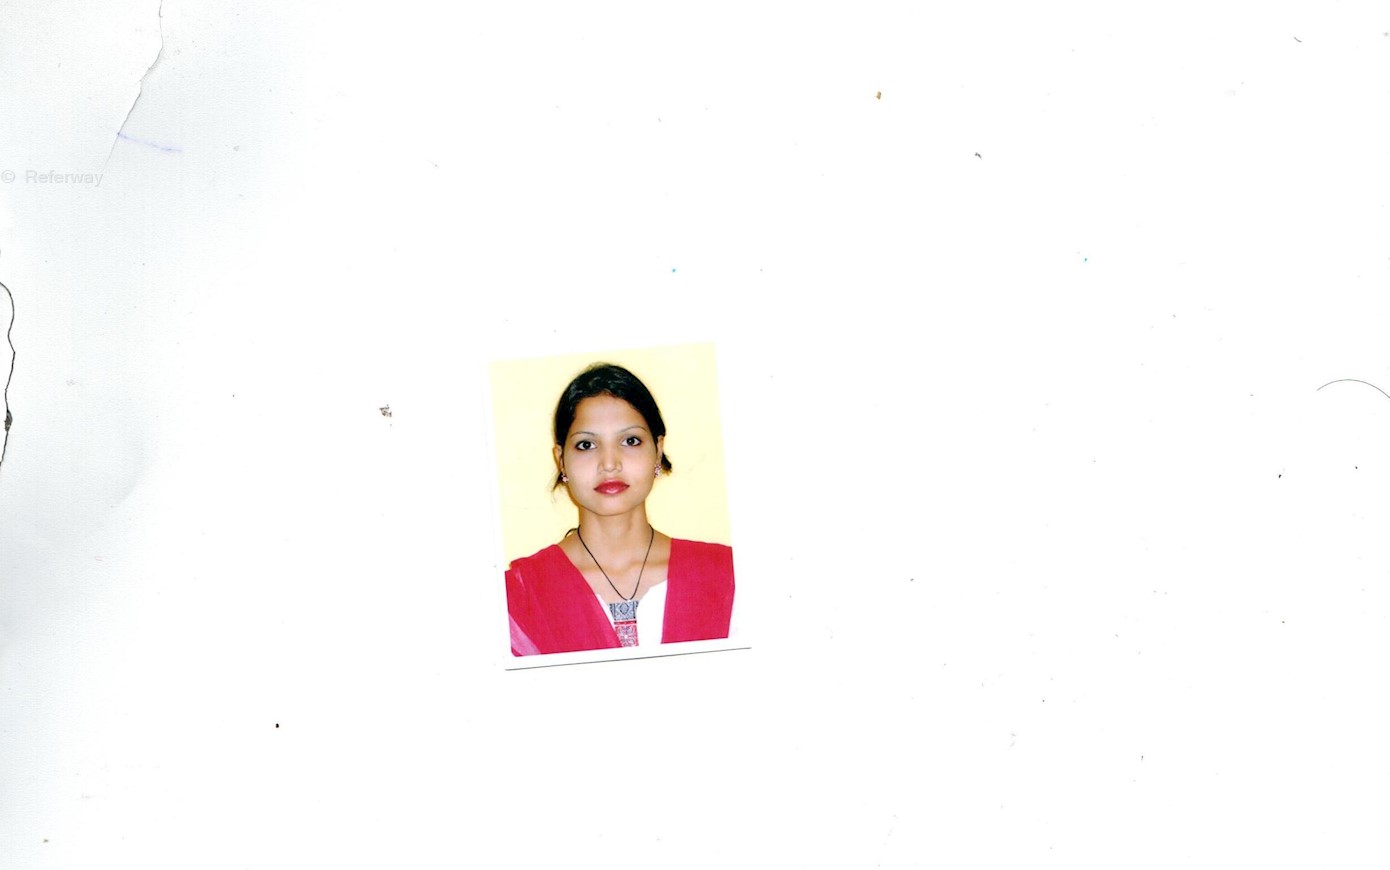 profile cover photo